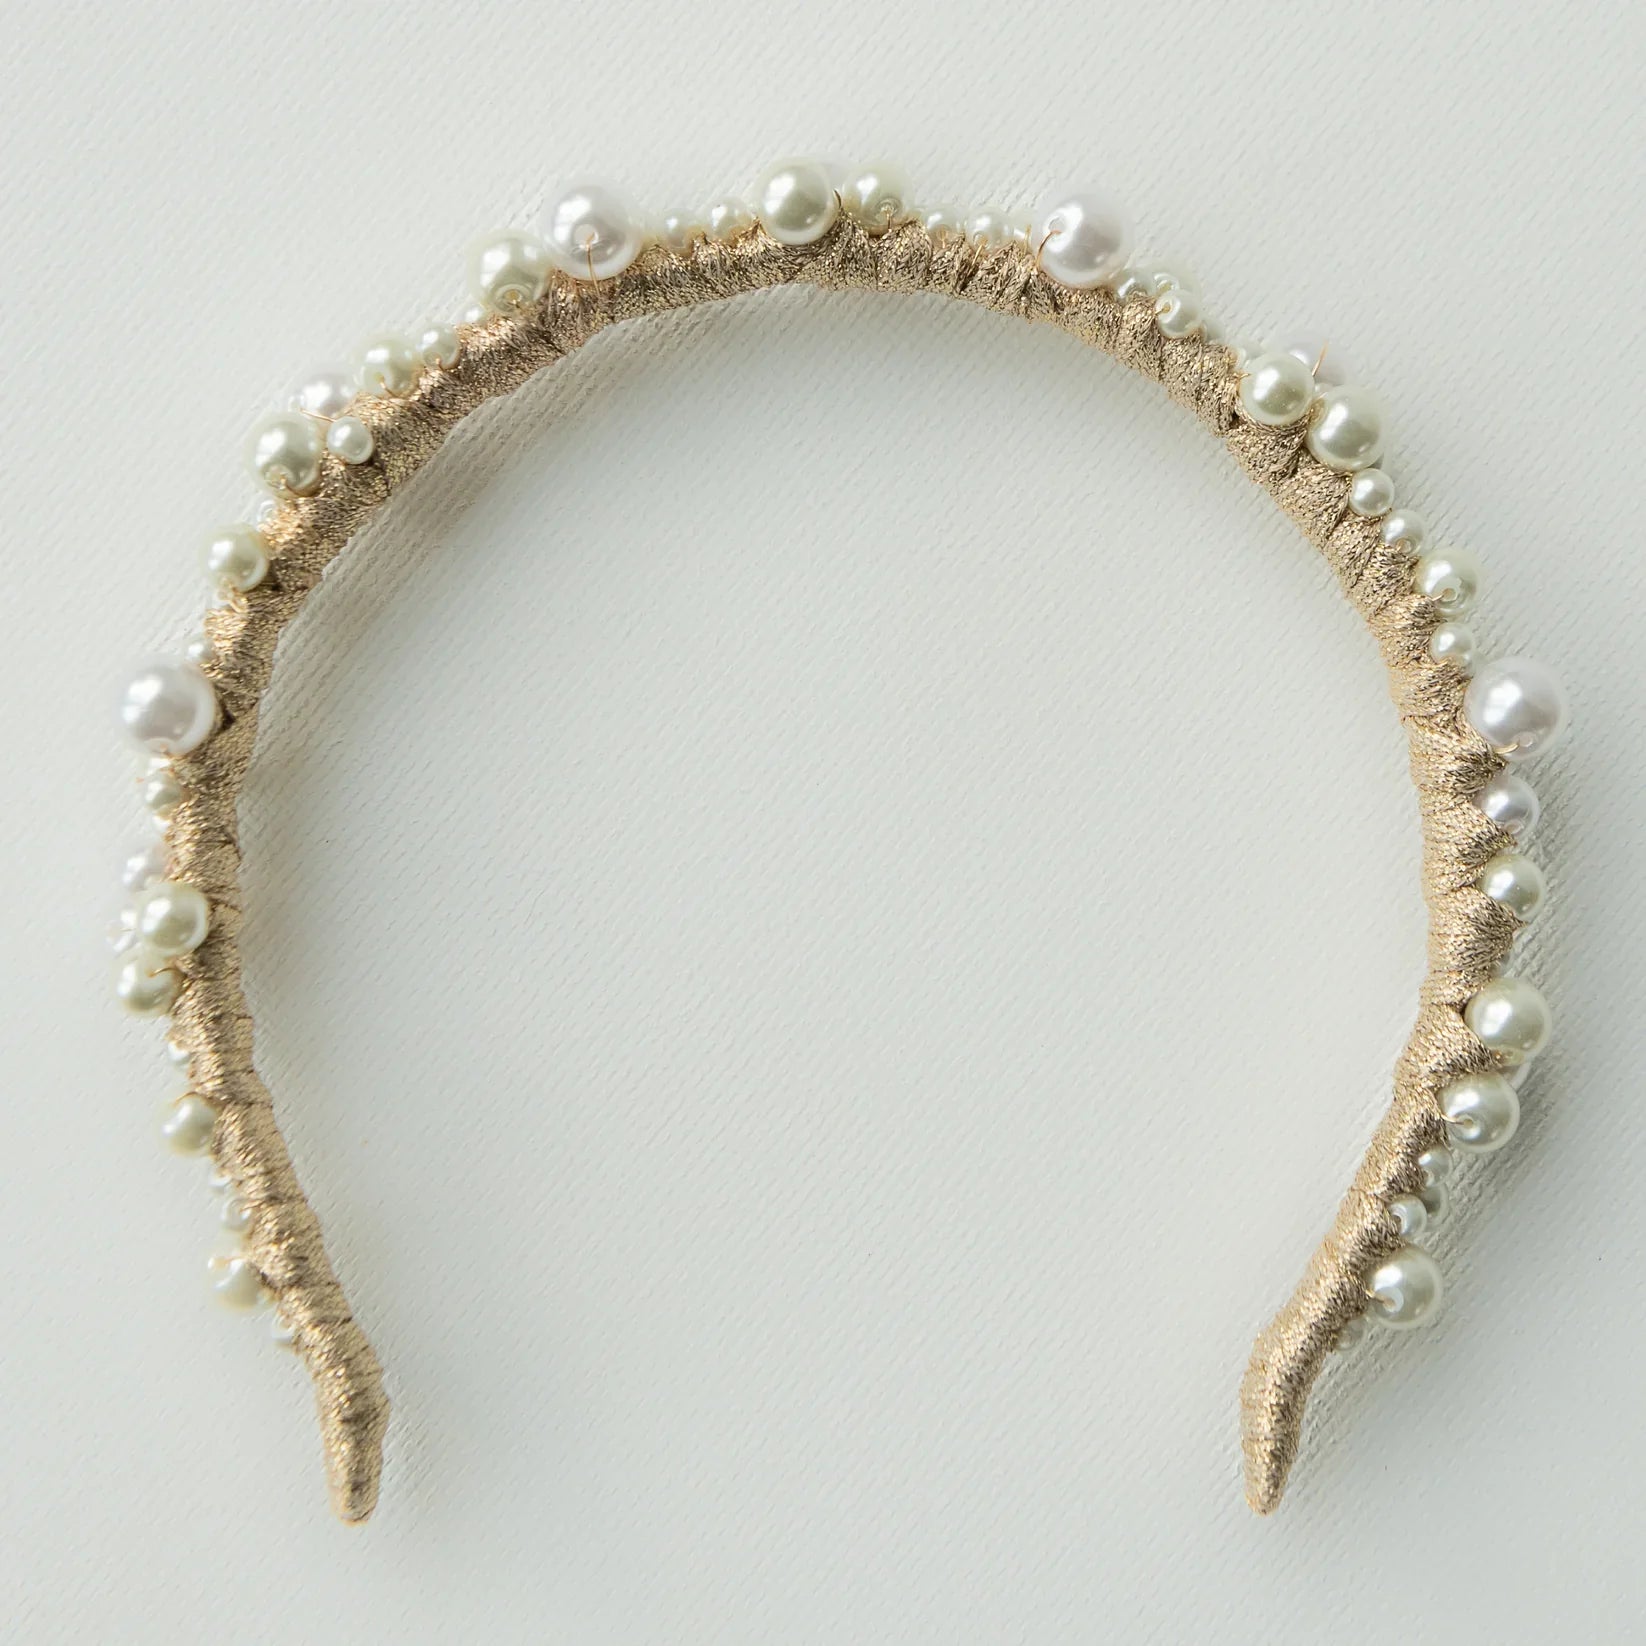 A'el Este - Charlotte & Mia - Bridal Pearl Headband Set - Gold